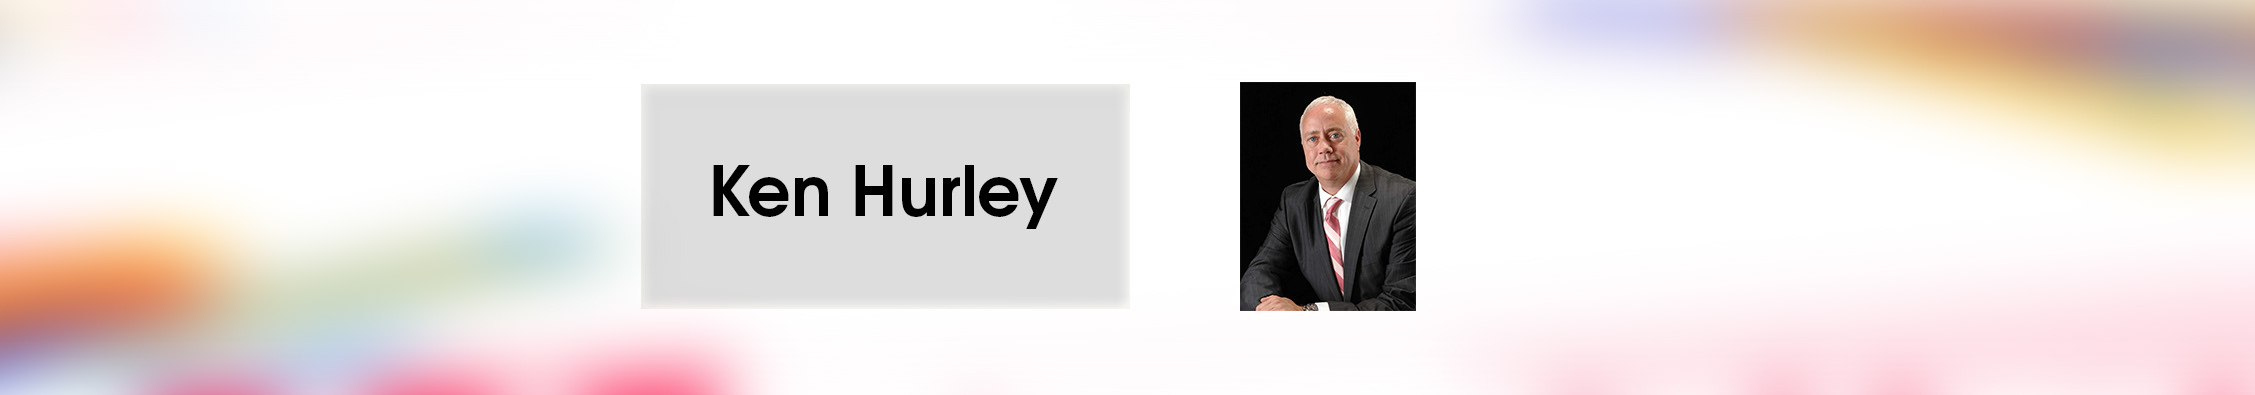 Ken Hurley's profile banner